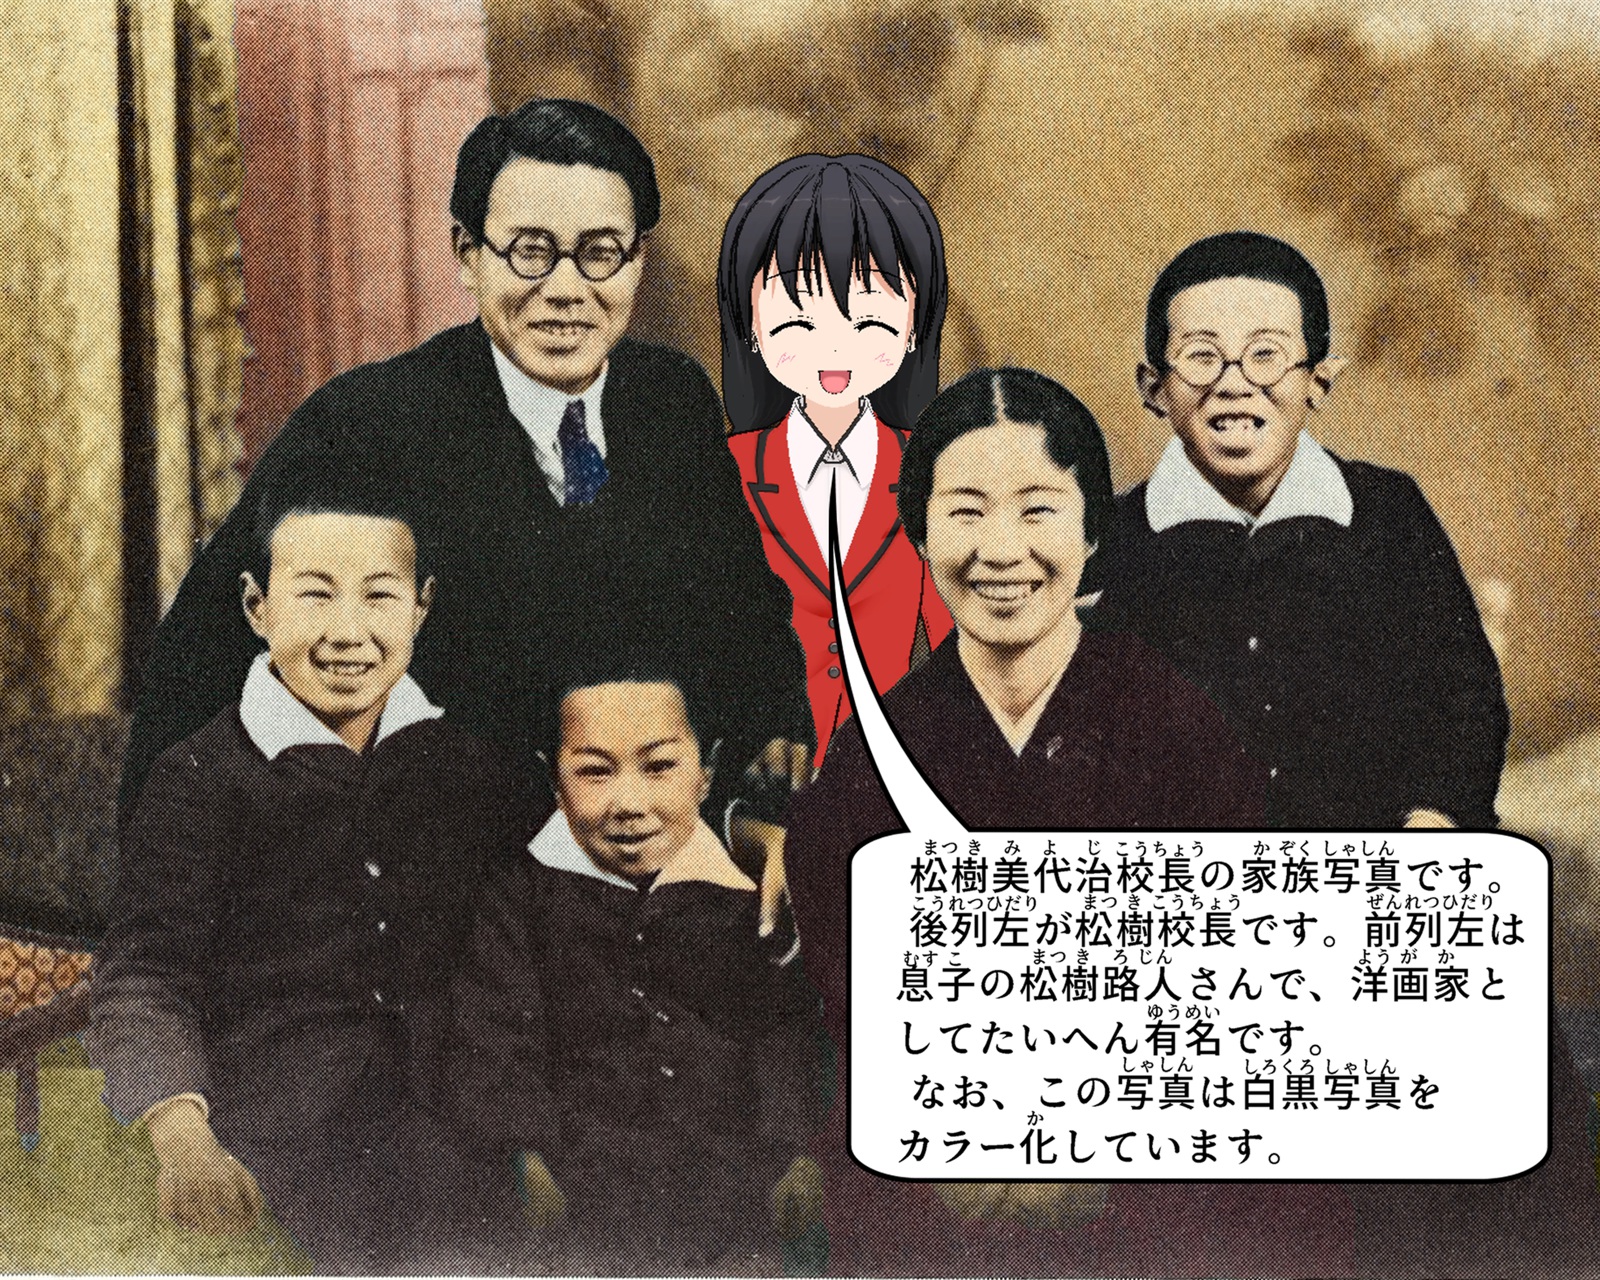 松樹美代治校長の家族の写真の説明をしているイラスト